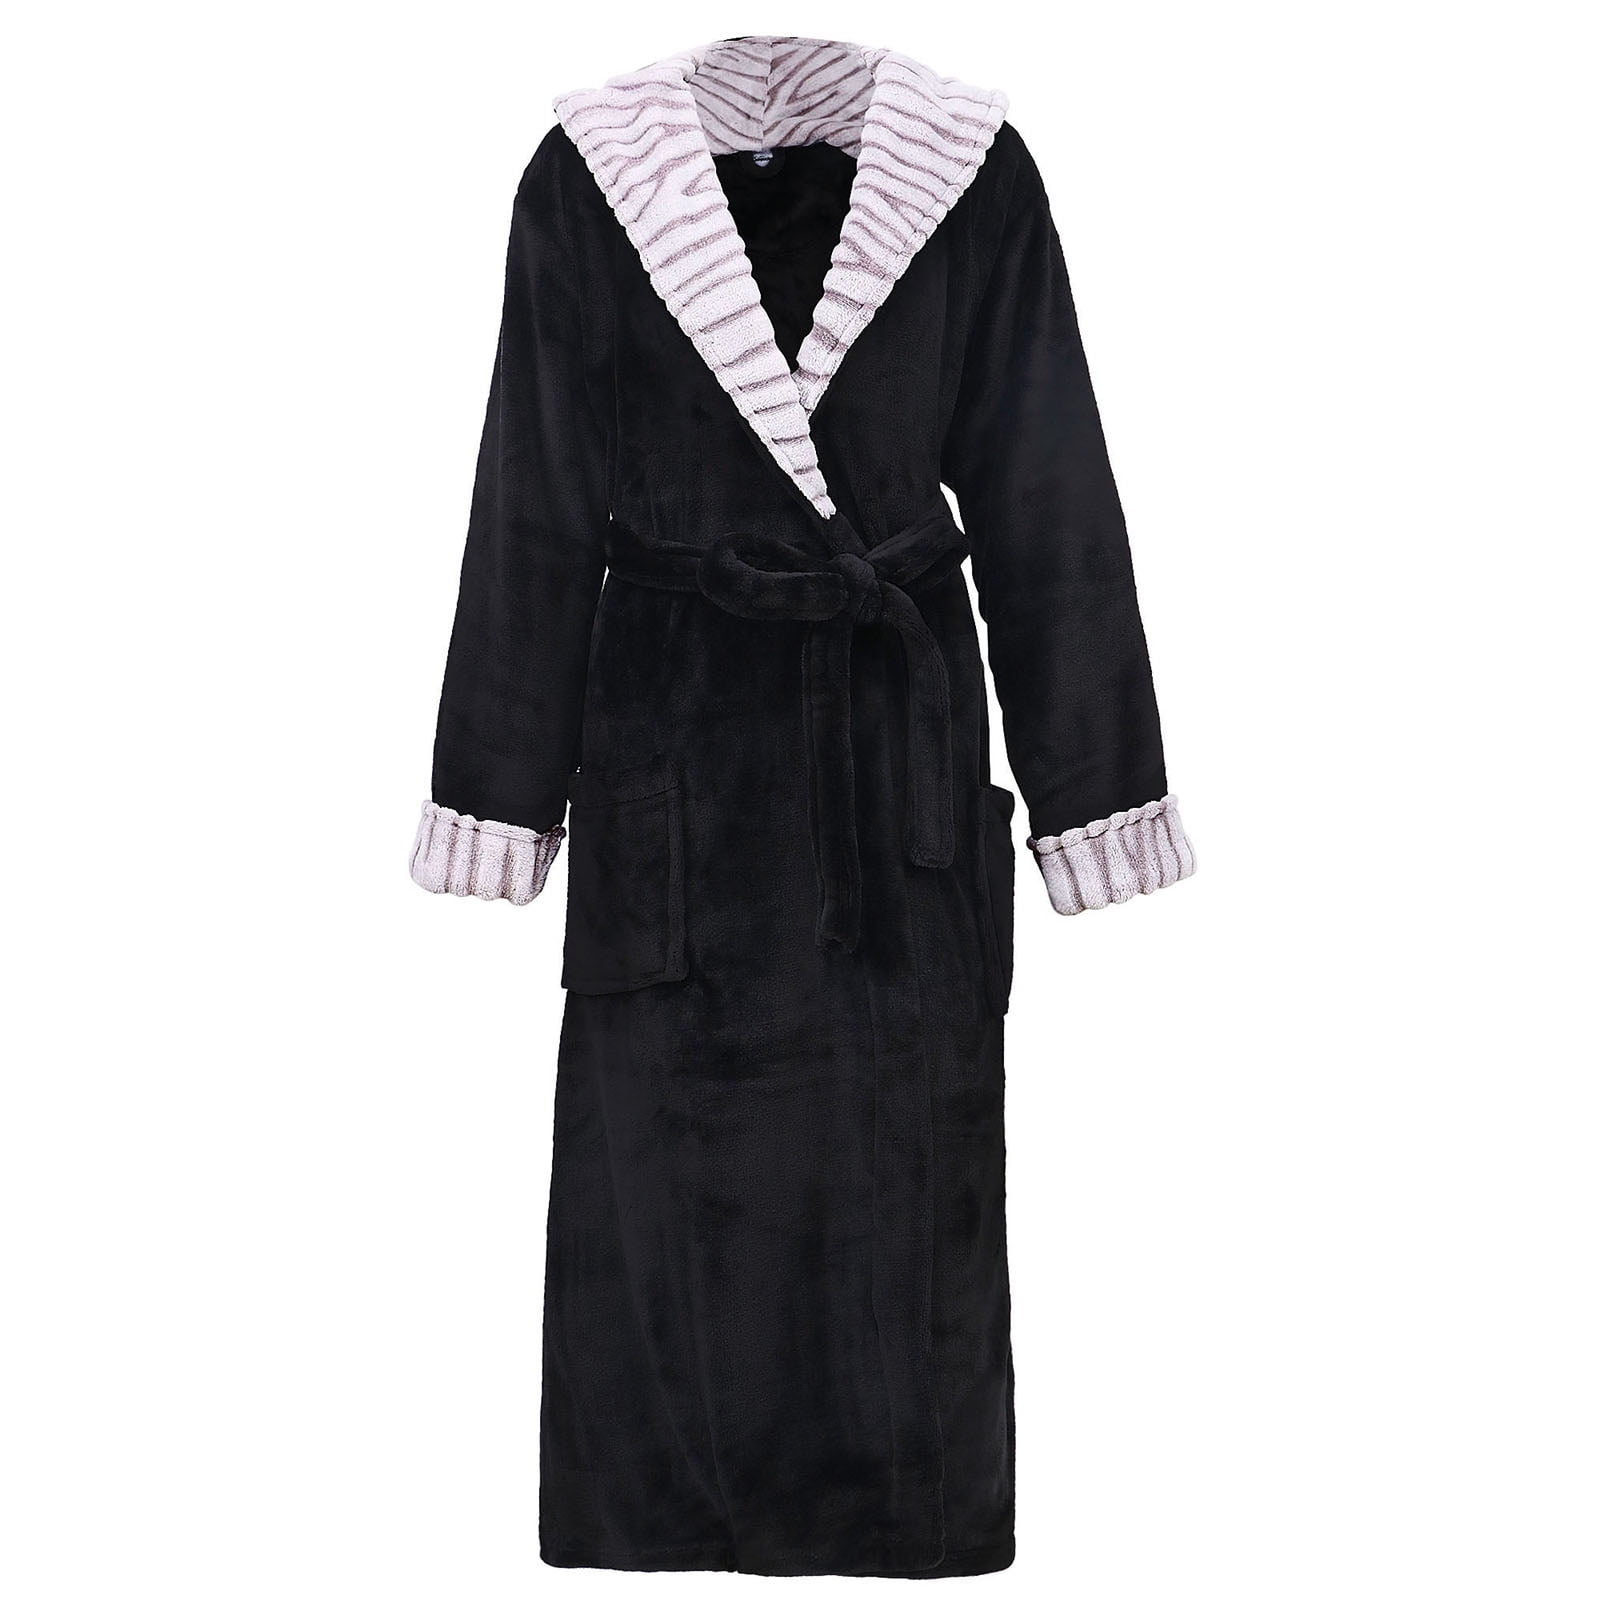 BASILICA - Robes for women Bath Robe Womens Fleece Robe ...